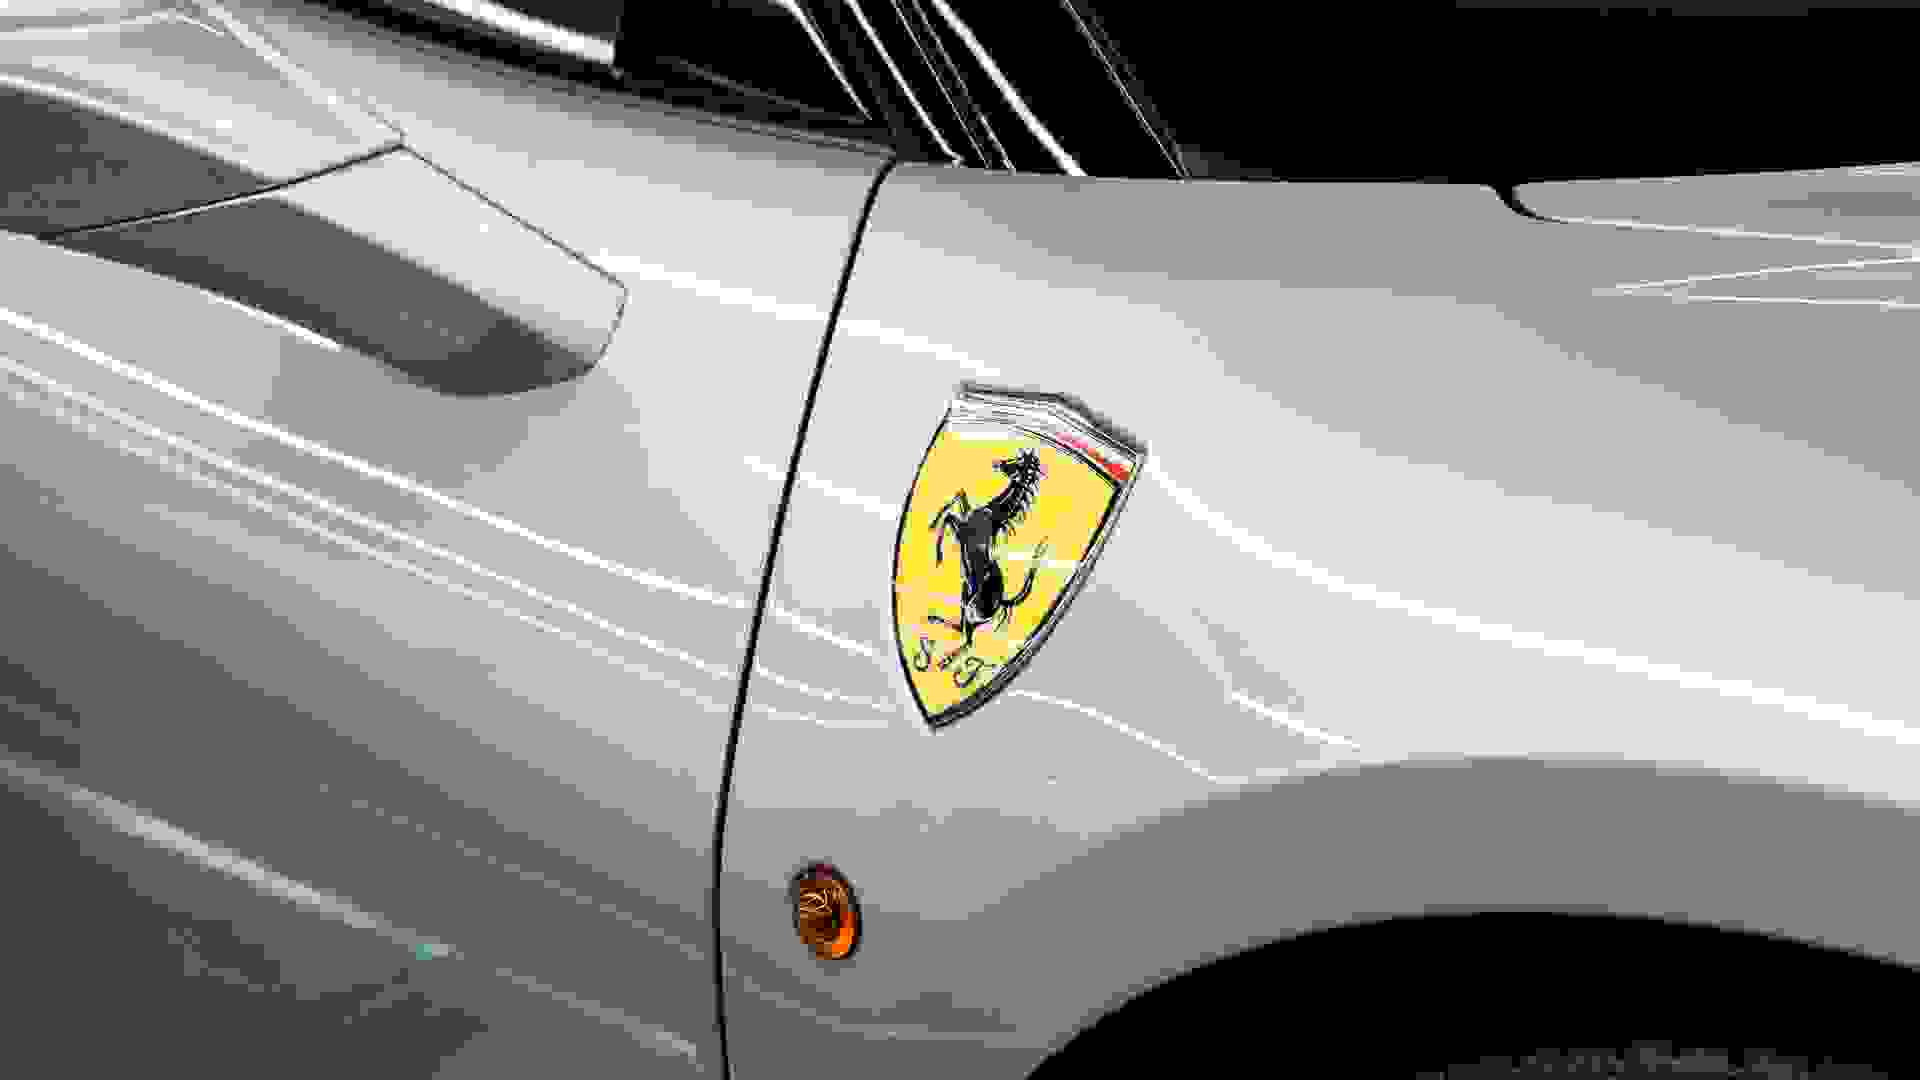 Ferrari 488 Photo d19028b7-835b-440d-aa96-21ceffb2ba79.jpg